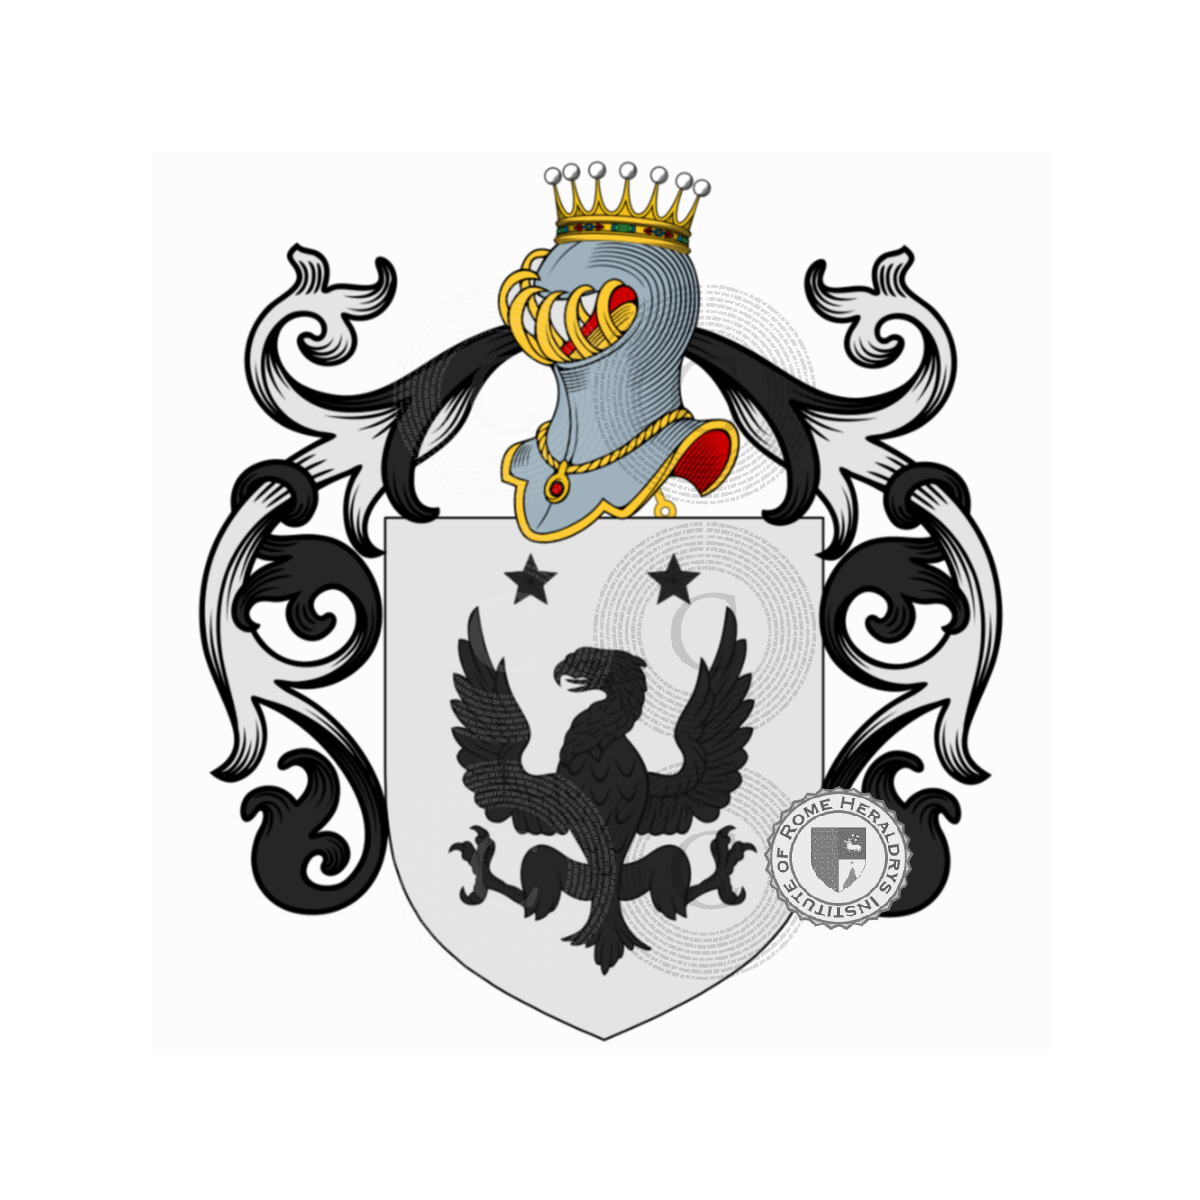 Wappen der Familielo Re, dal Re,Deregibus,lo Re,Re della Pona,Re Rebaudengo,Rebaudengo